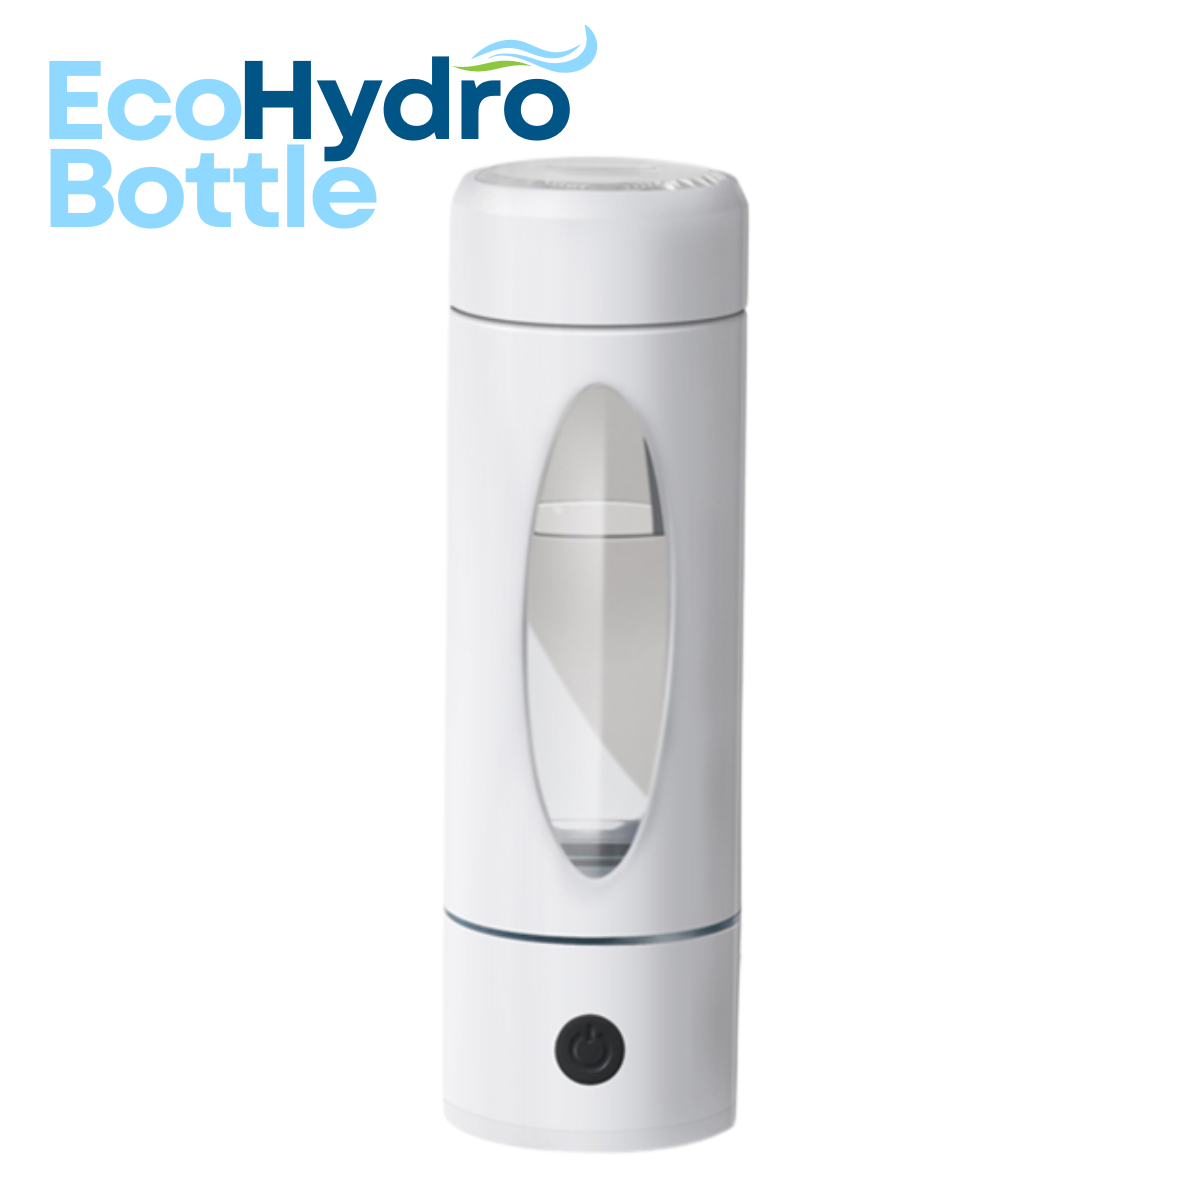 The EcoHydro Bottle - 14oz | 2000 PPB